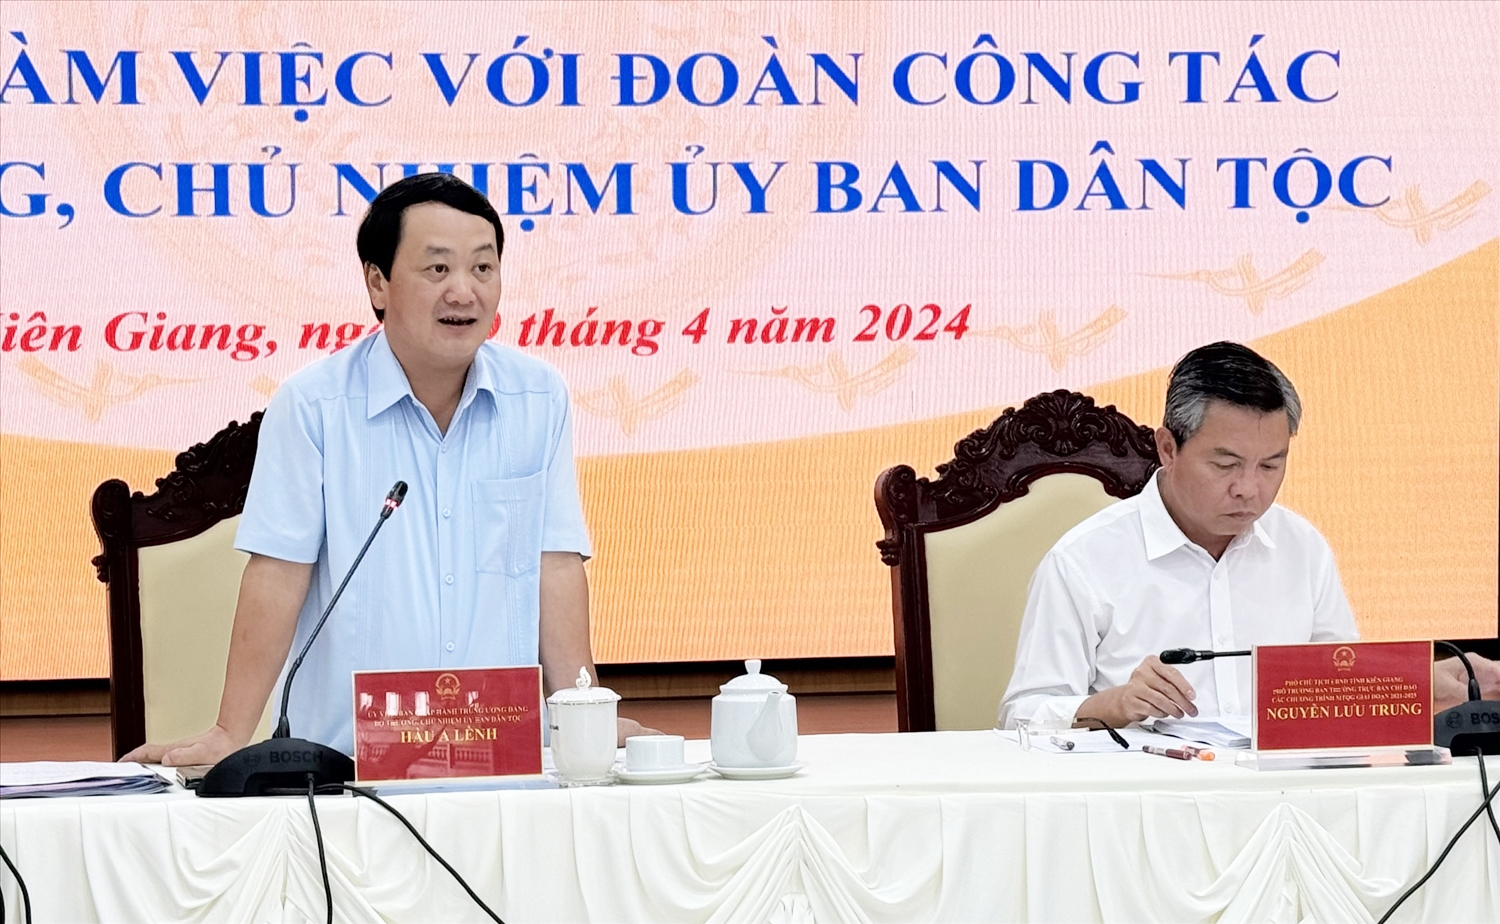 Bộ trưởng, Chủ nhiệm UBDT Hầu A Lềnh phát biểu tại buổi làm việc với lãnh đạo tỉnh Kiên Giang về kết quả thực hiện Chương trình MTQG 1719.